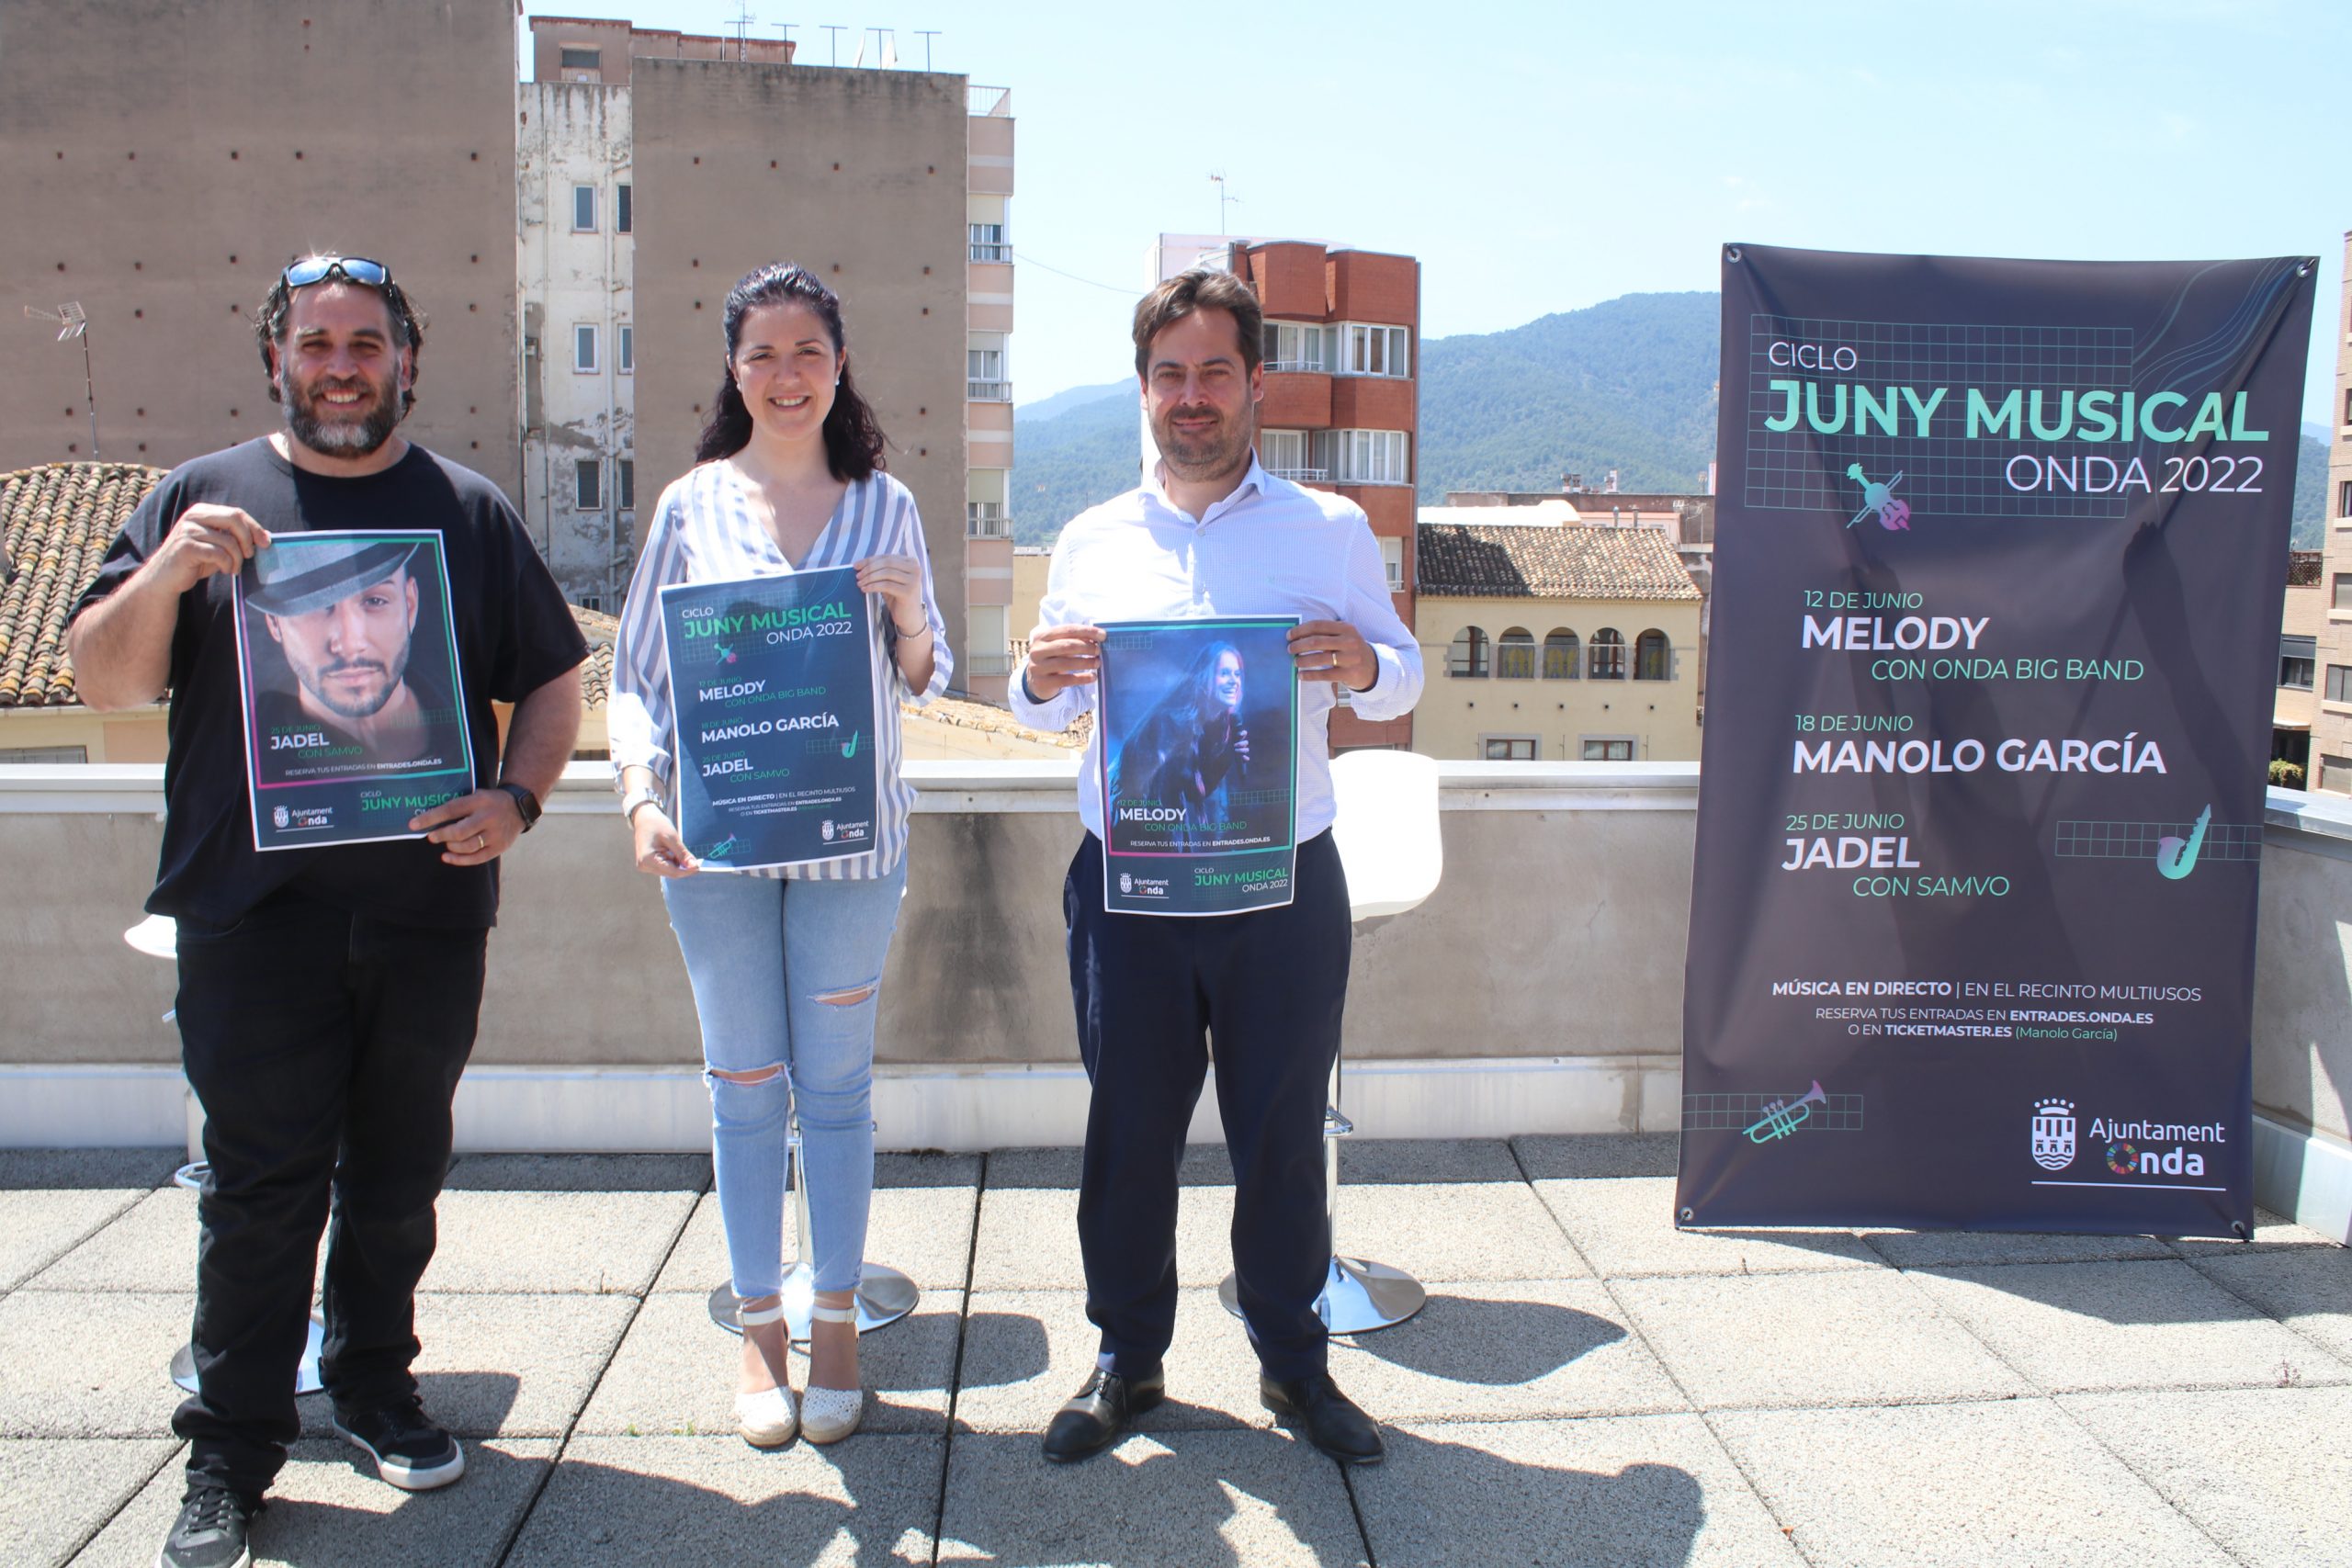 Onda anuncia un nuevo ciclo de ‘Juny musical’ con Manolo García, Melody y Jadel junto a los músicos locales